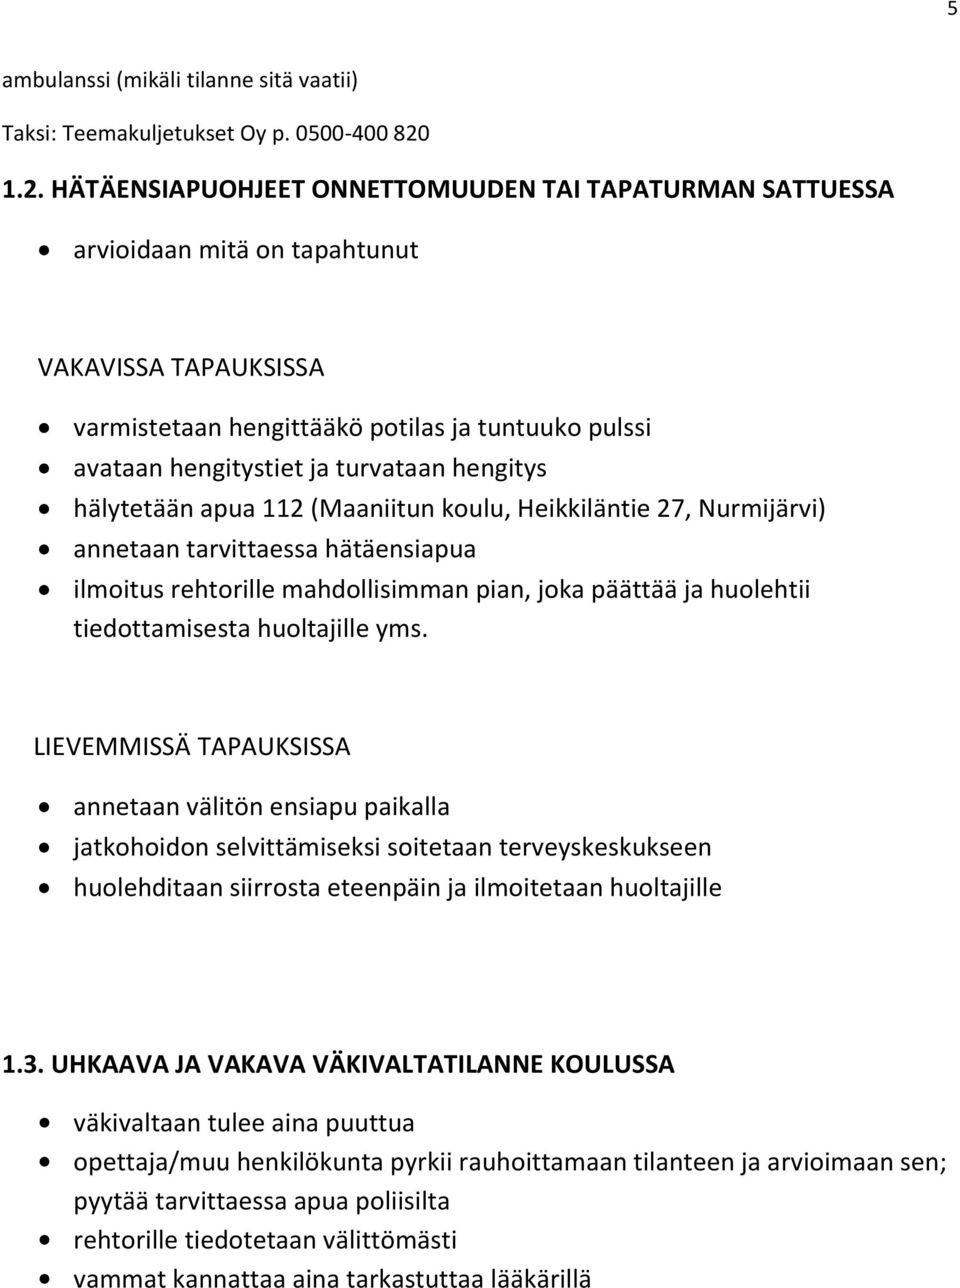 hengitys hälytetään apua 112 (Maaniitun koulu, Heikkiläntie 27, Nurmijärvi) annetaan tarvittaessa hätäensiapua ilmoitus rehtorille mahdollisimman pian, joka päättää ja huolehtii tiedottamisesta